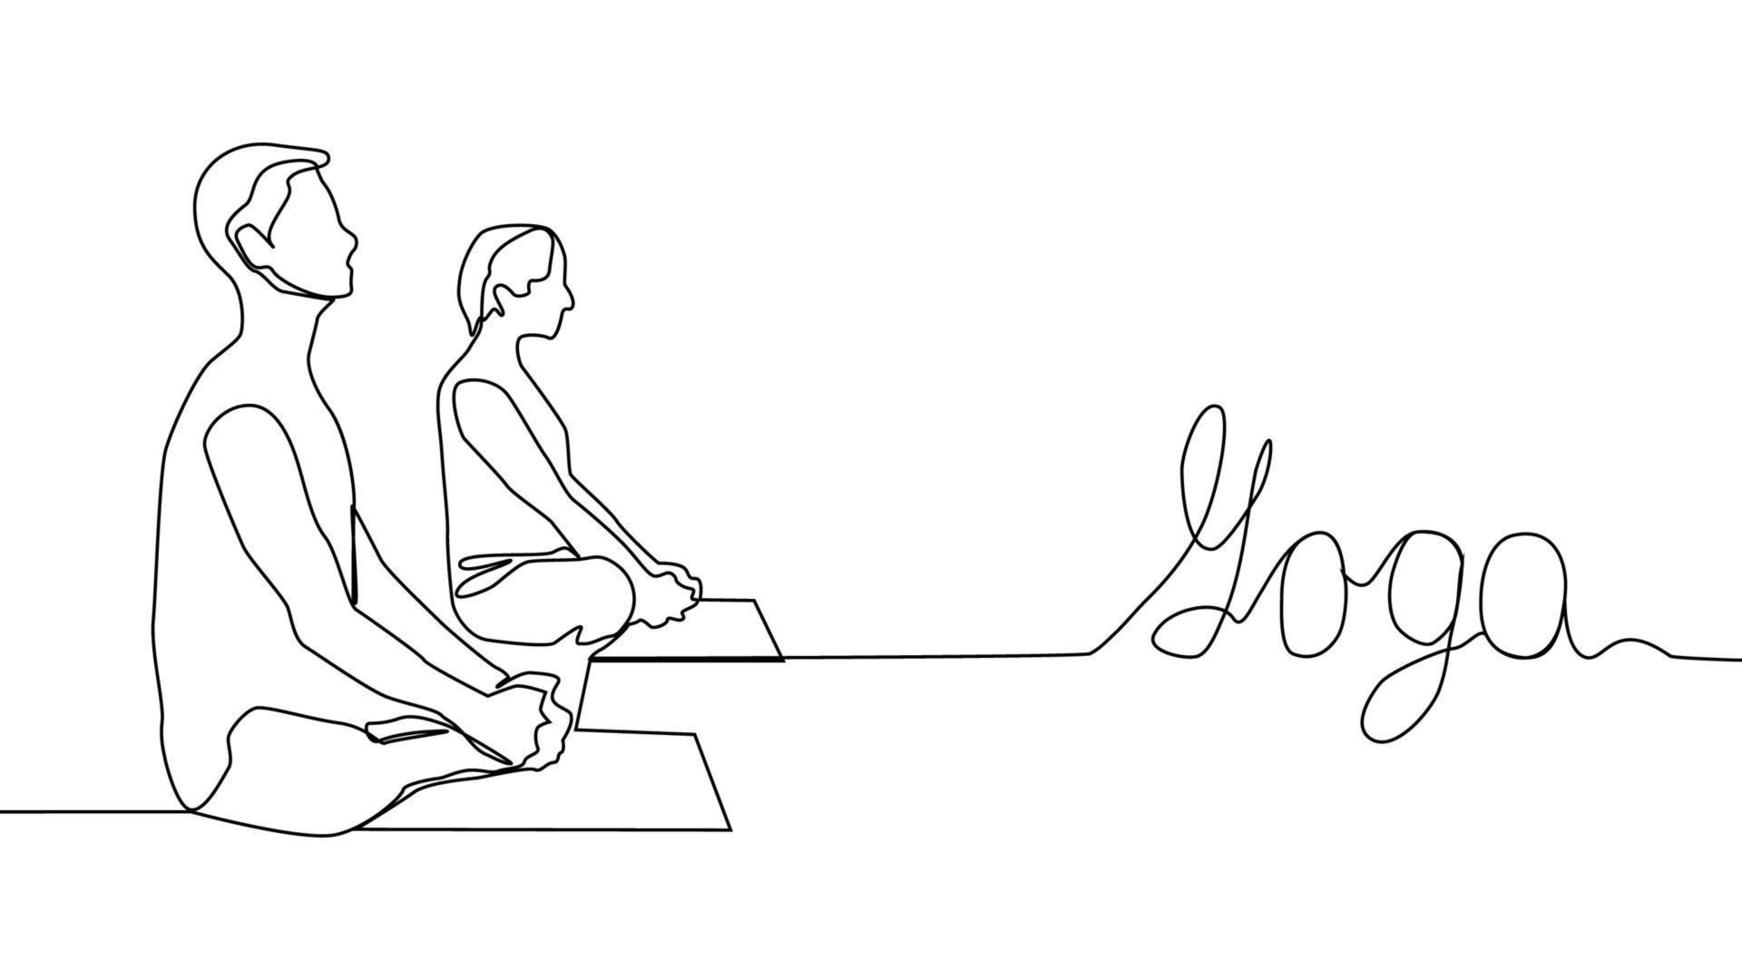 yoga, mujer, hombre practica yoga sentado en posición de loto. dibujo de línea continua vector